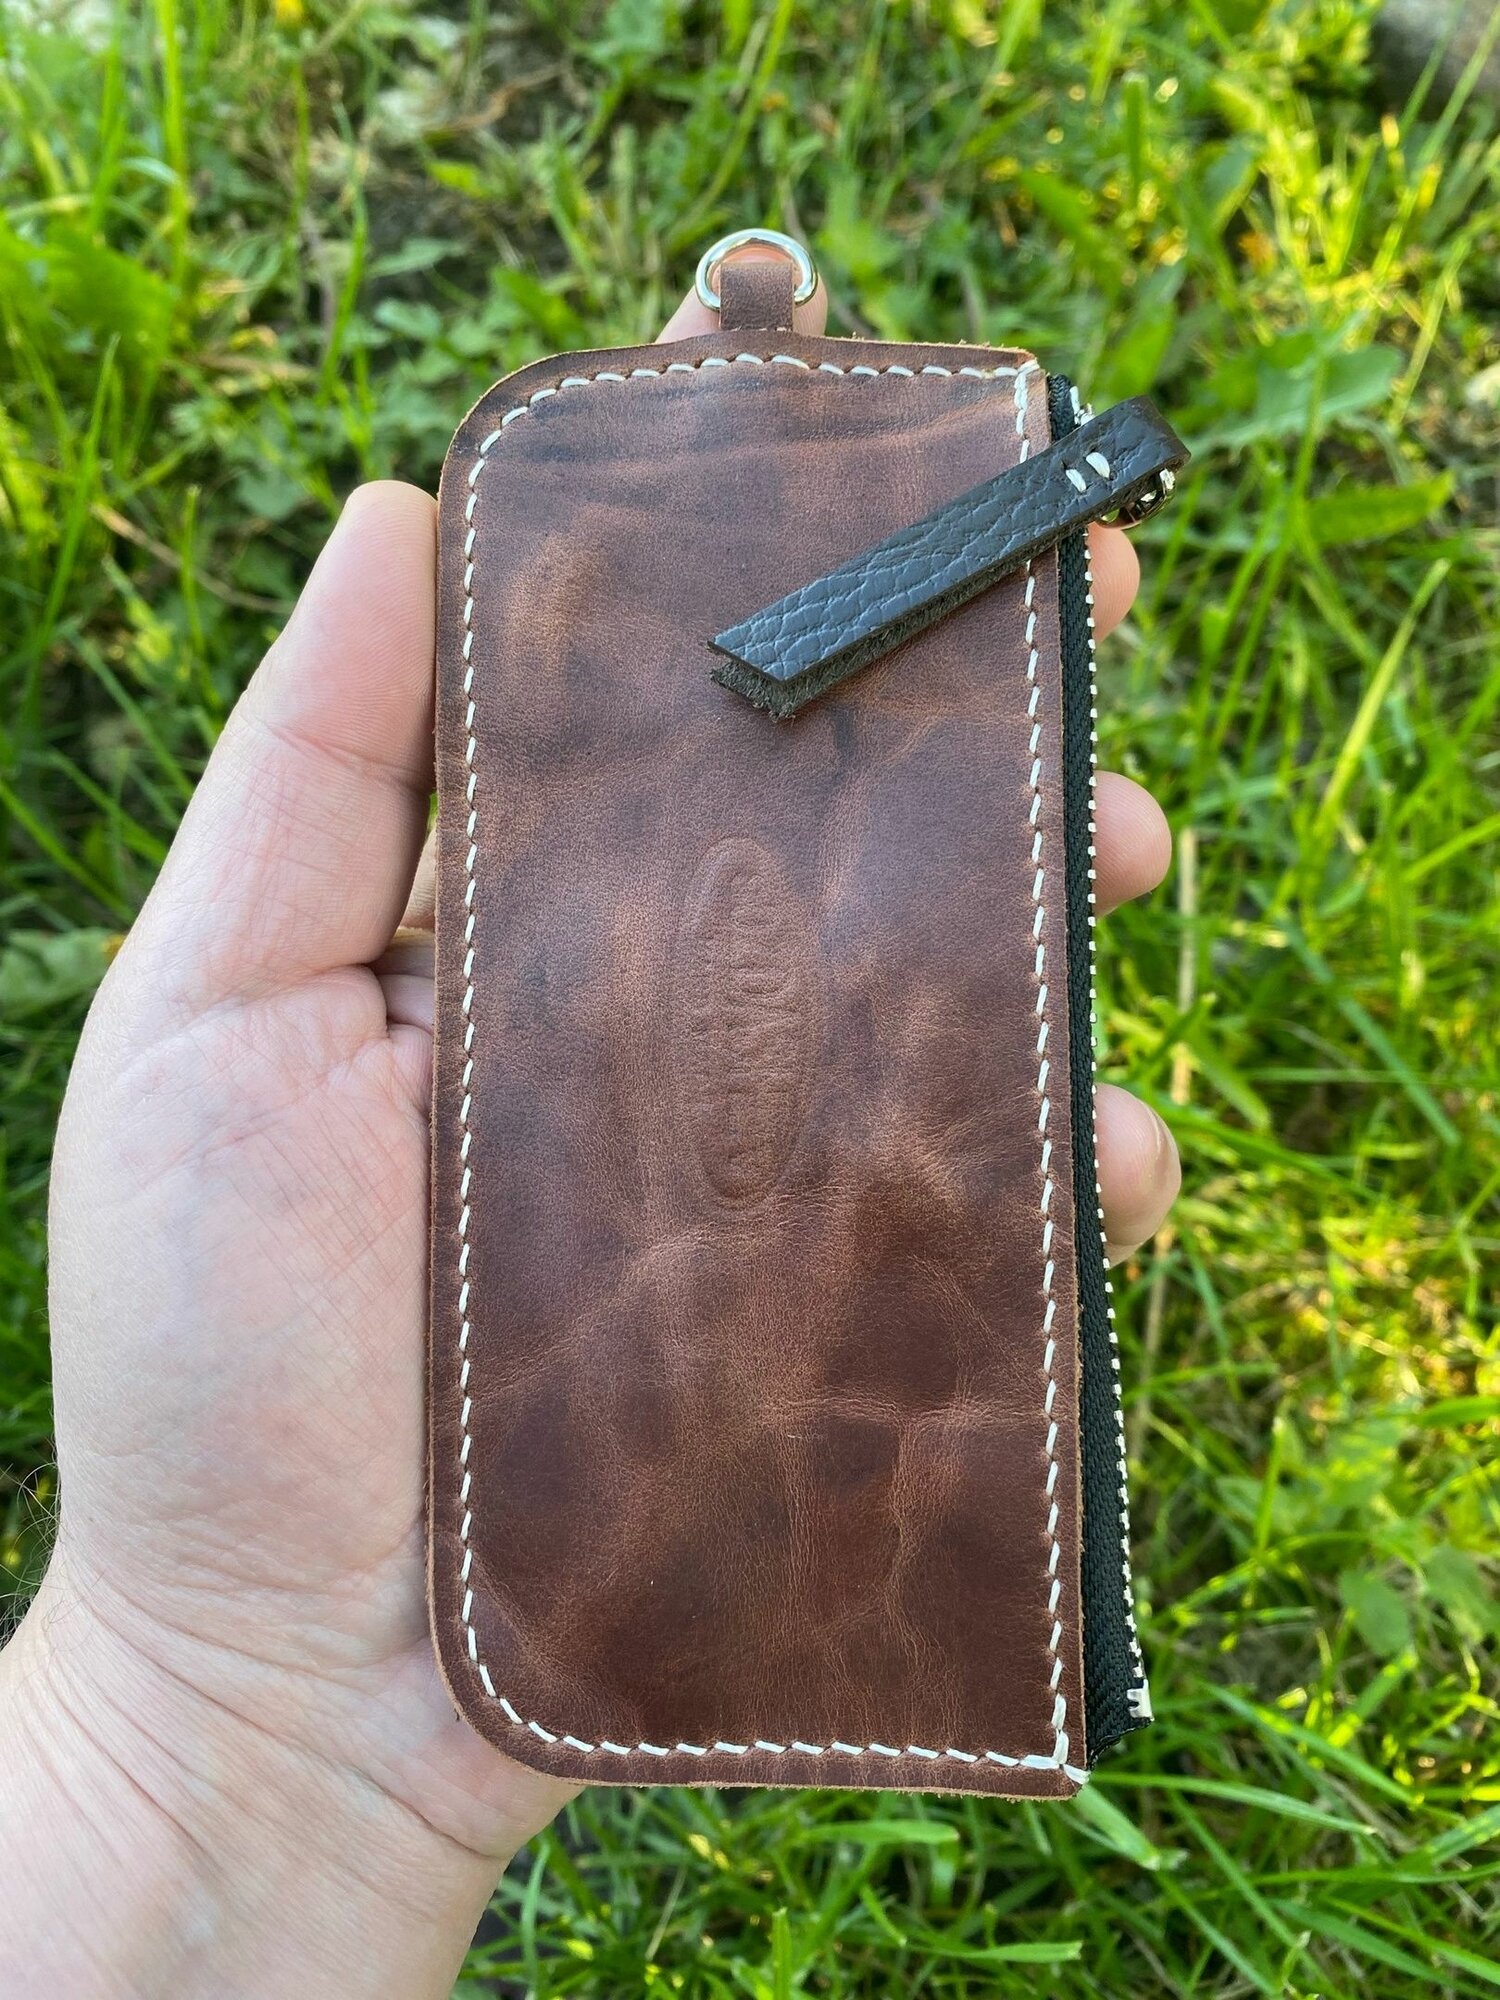 Ключница SOZDASHEV Hand Made Ключница кожаная на молнии карманная коричневая авторская / Монетница из натуральной итальянской кожи ручной работы